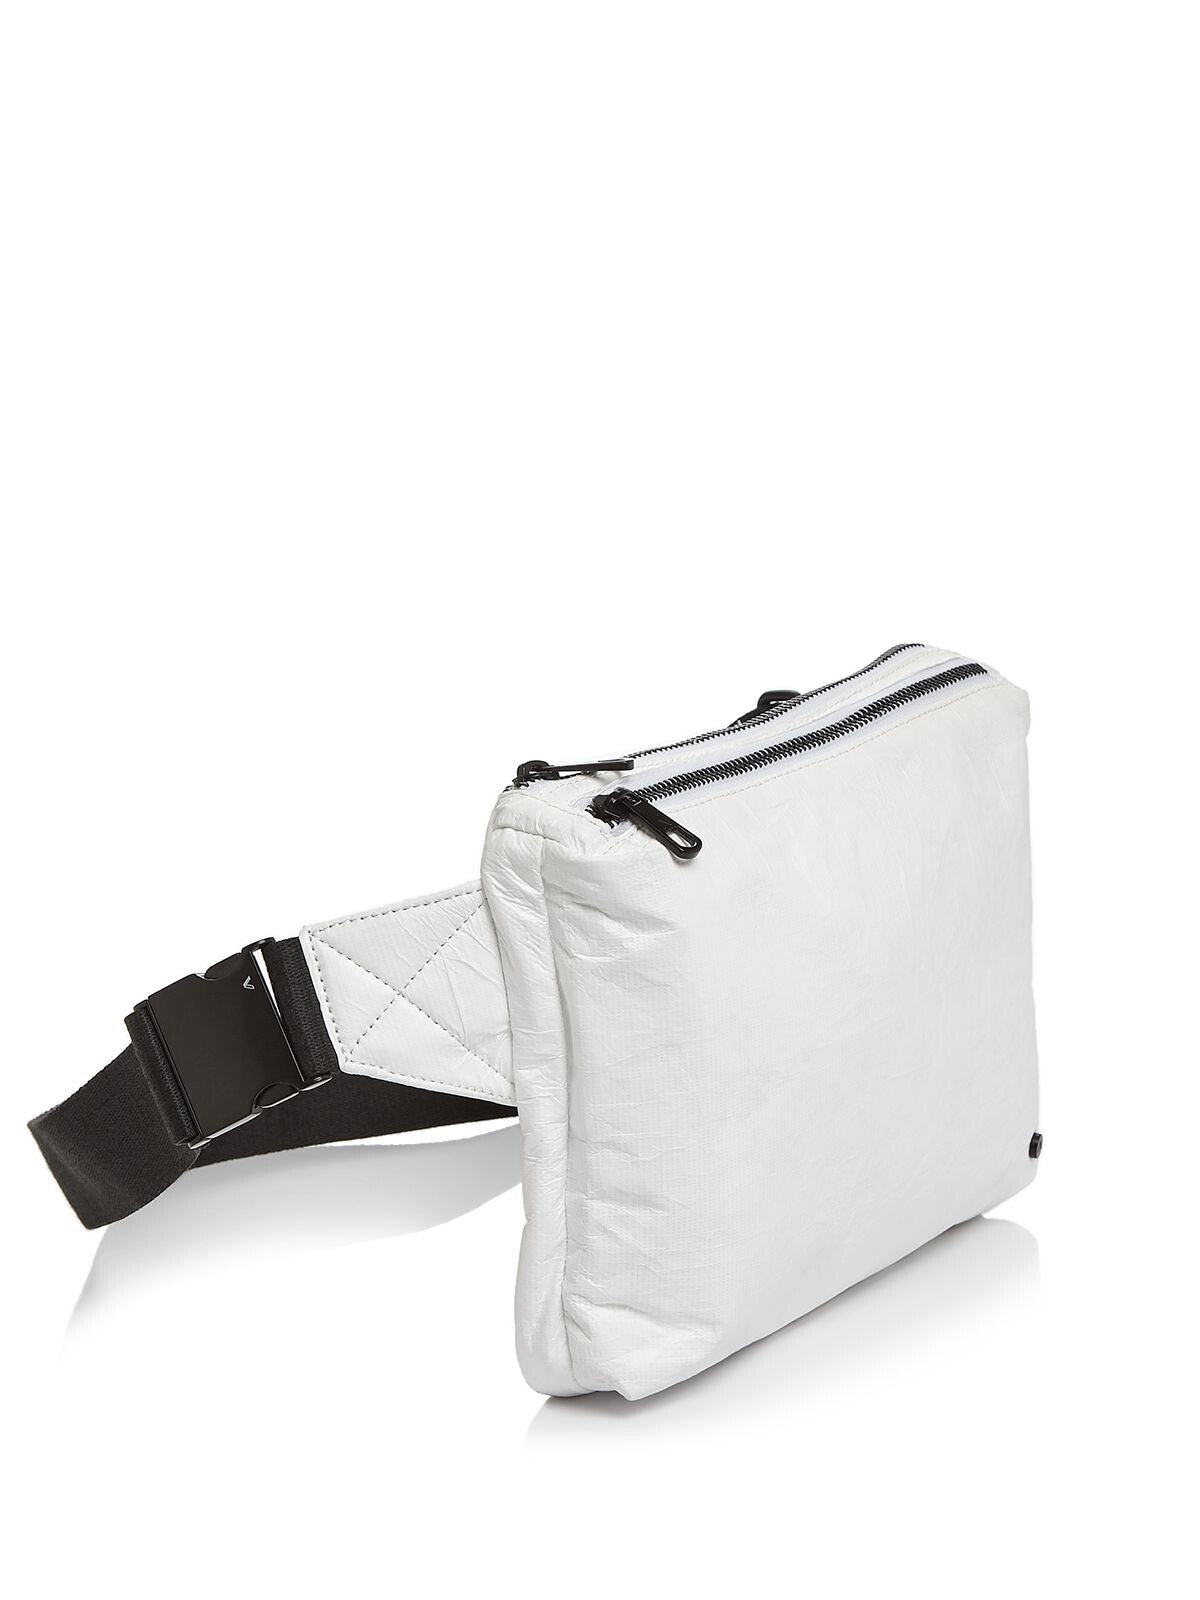 STATE Women's White Webster Buckle Adjustable Strap Belt Bag Purse